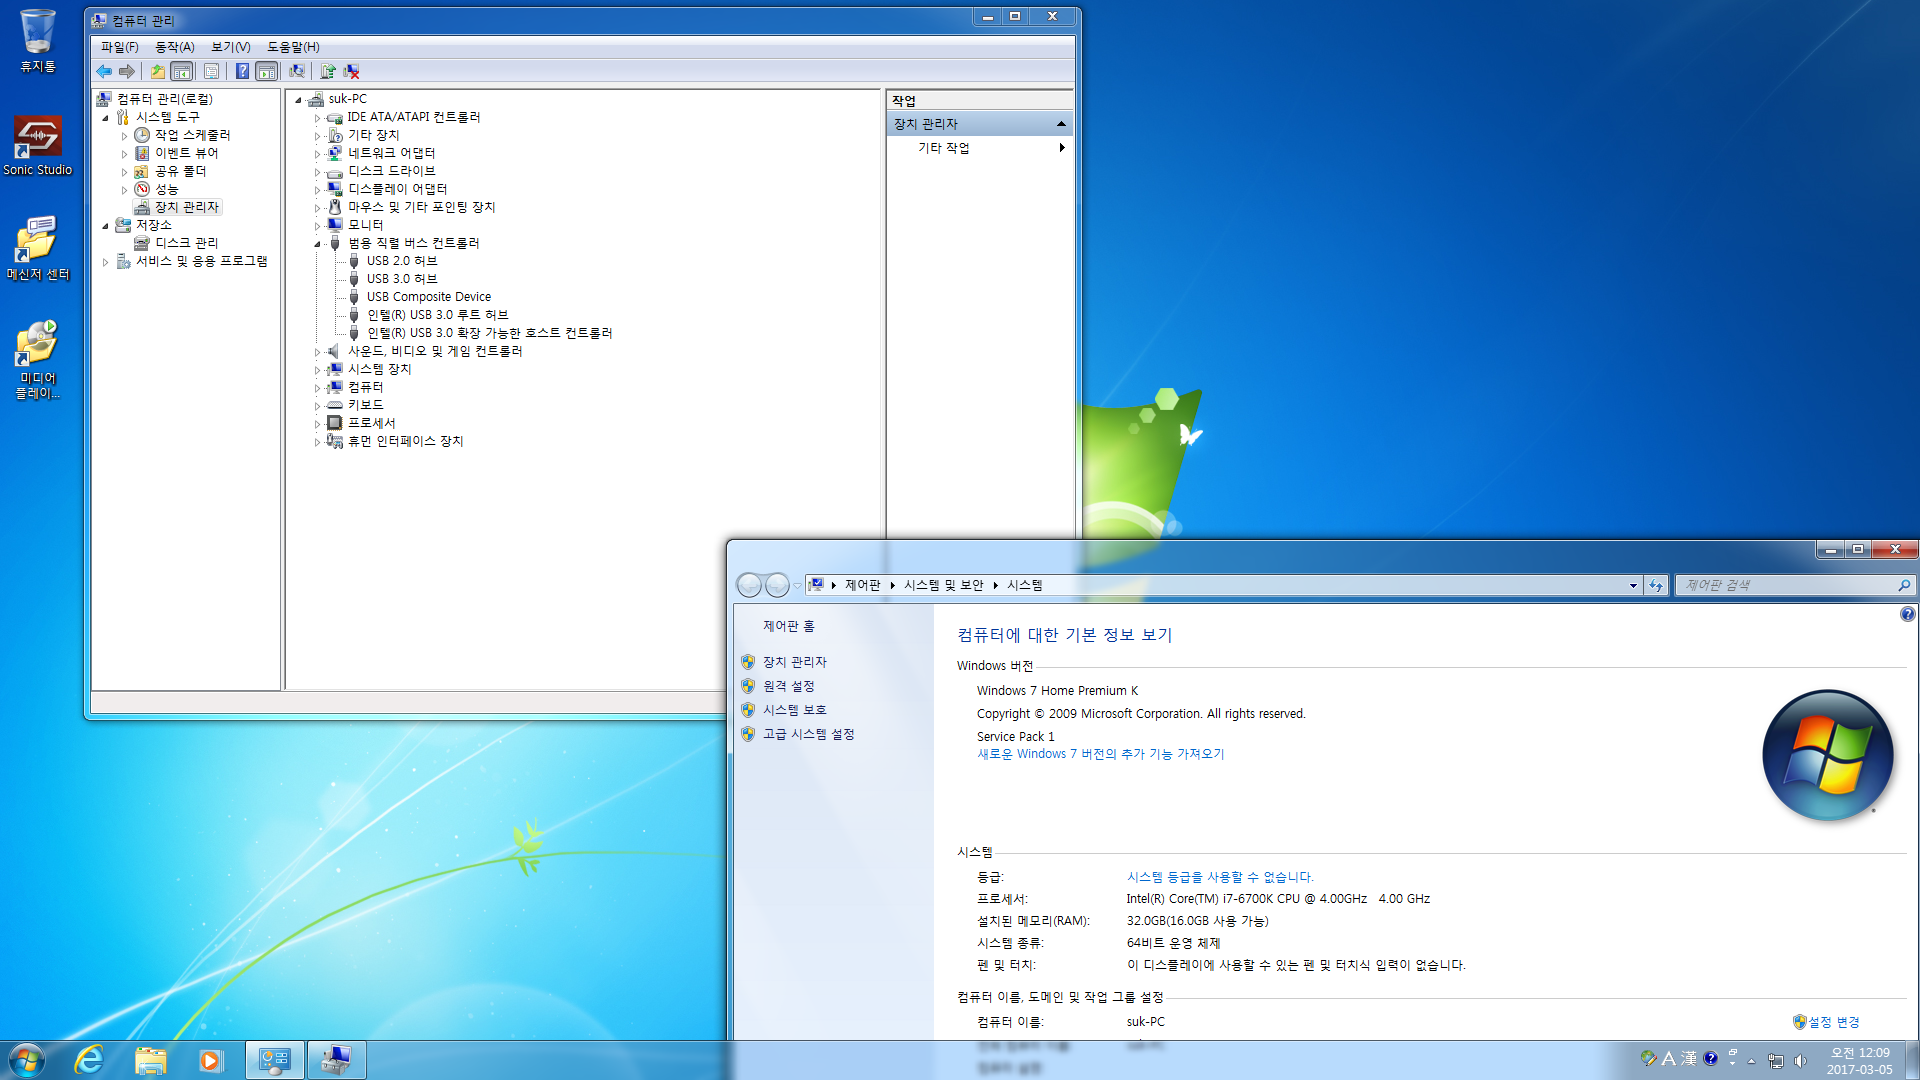 윈도7 카비레이크 NVMe 설치용 테스트통합중- 3번째통합-amd 라이젠 usb 버전업 -스카이레이크 실컴에 설치 테스트.png